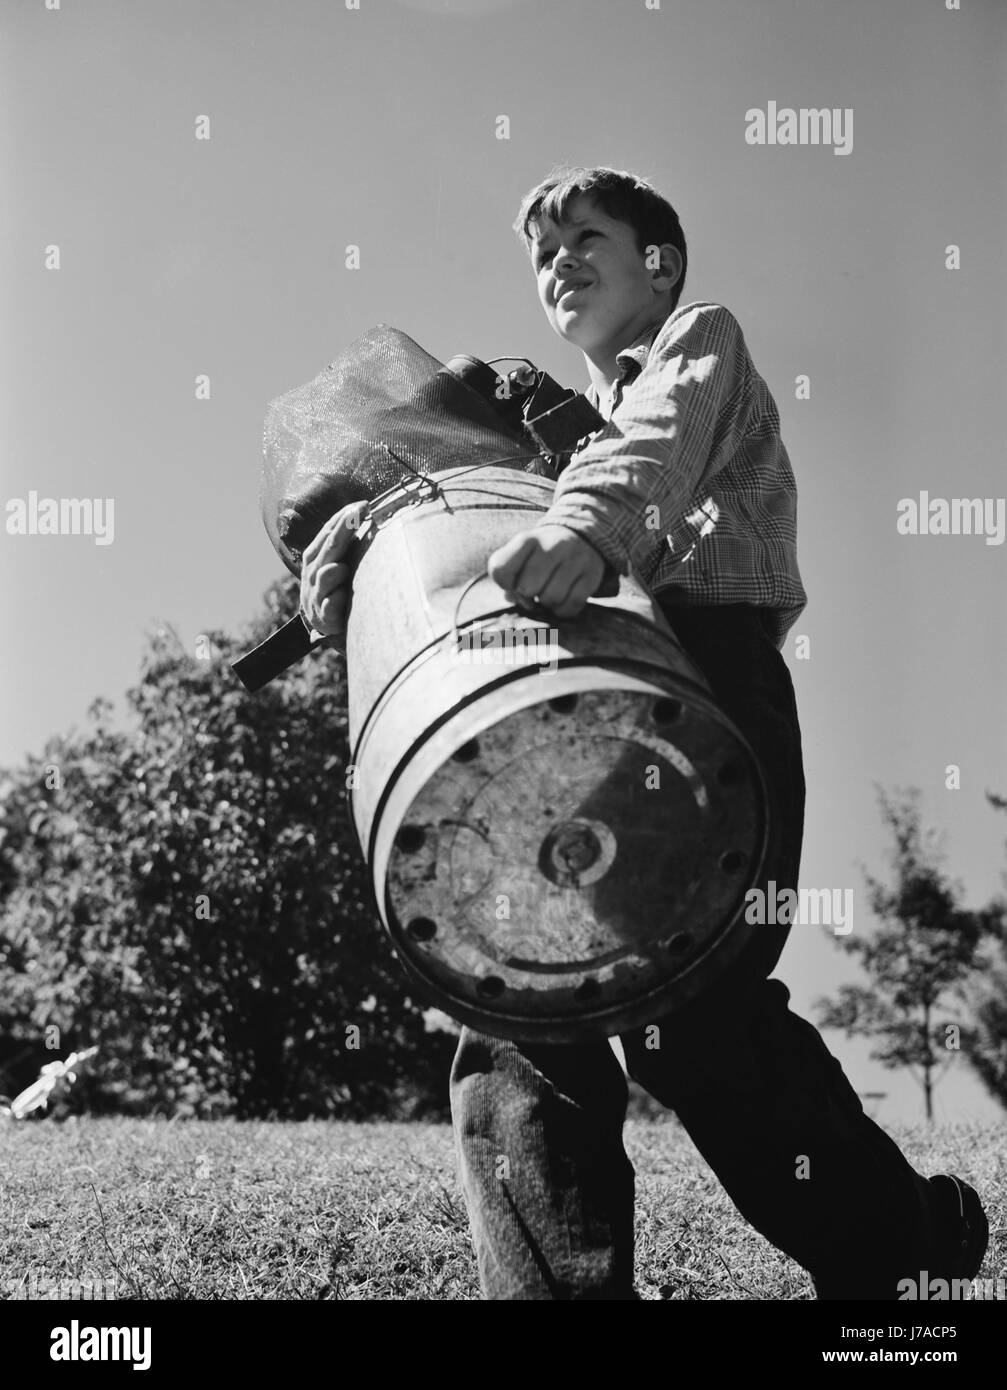 Ein kleiner Junge sammelt Schrott für Amerikas Kriegsindustrien, 1942. Stockfoto